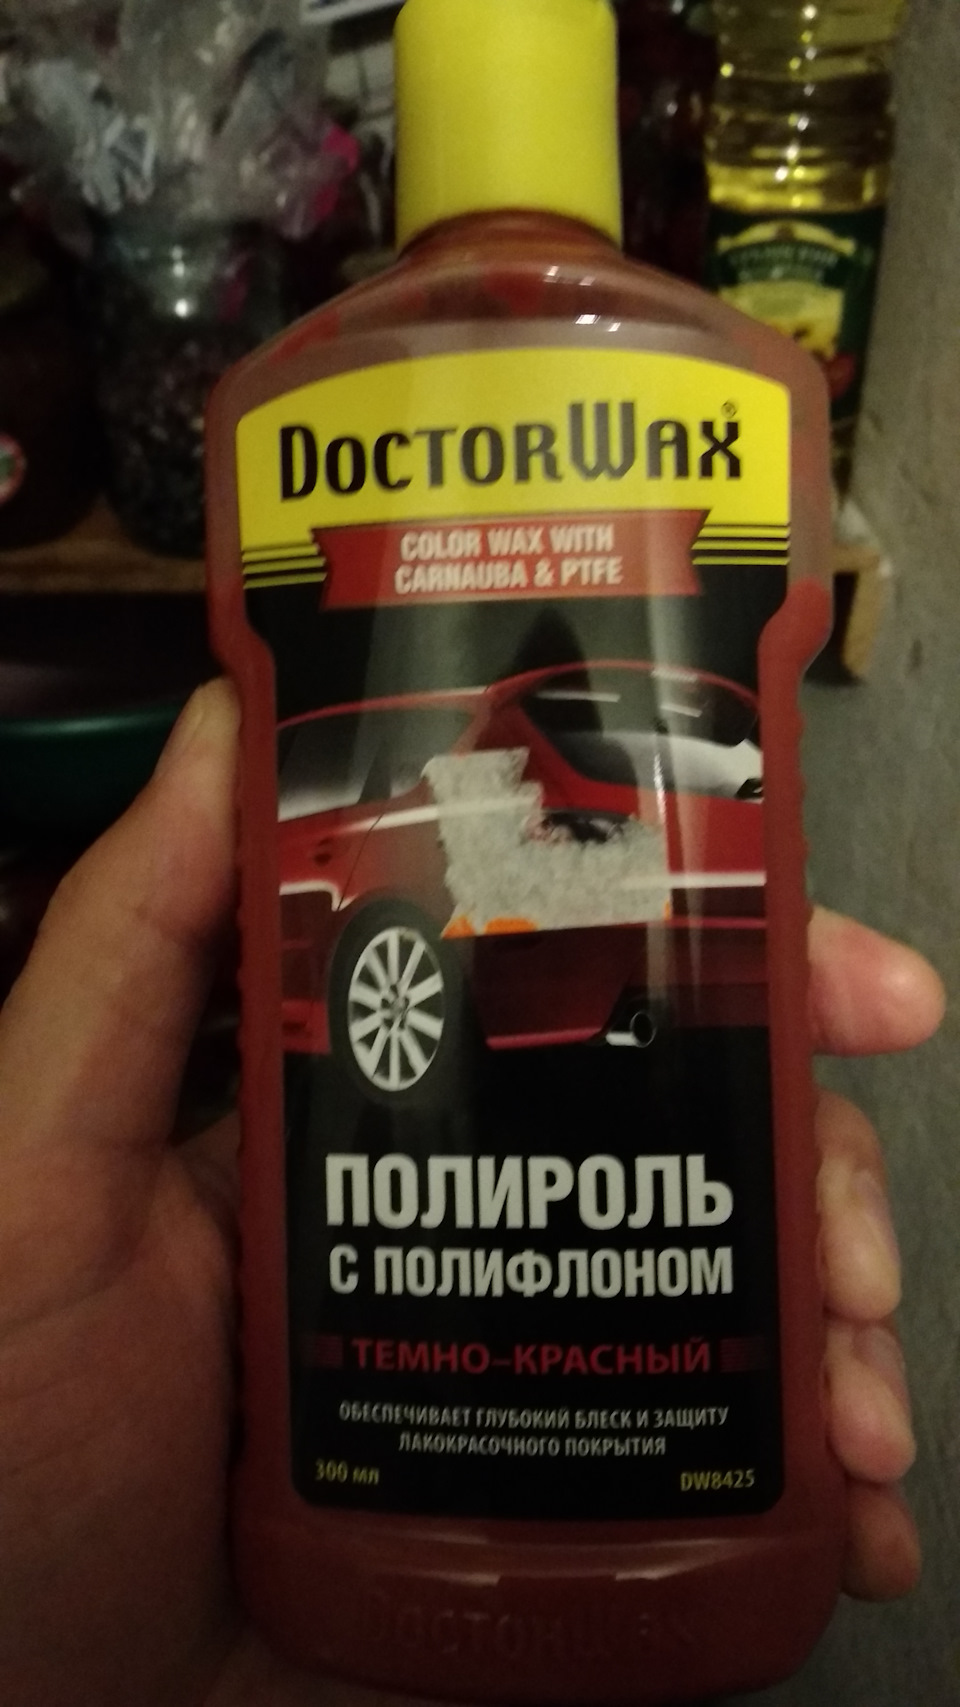 DW8425 Цветная полироль с тефлоном темно-красная, New DOCTOR WAX .